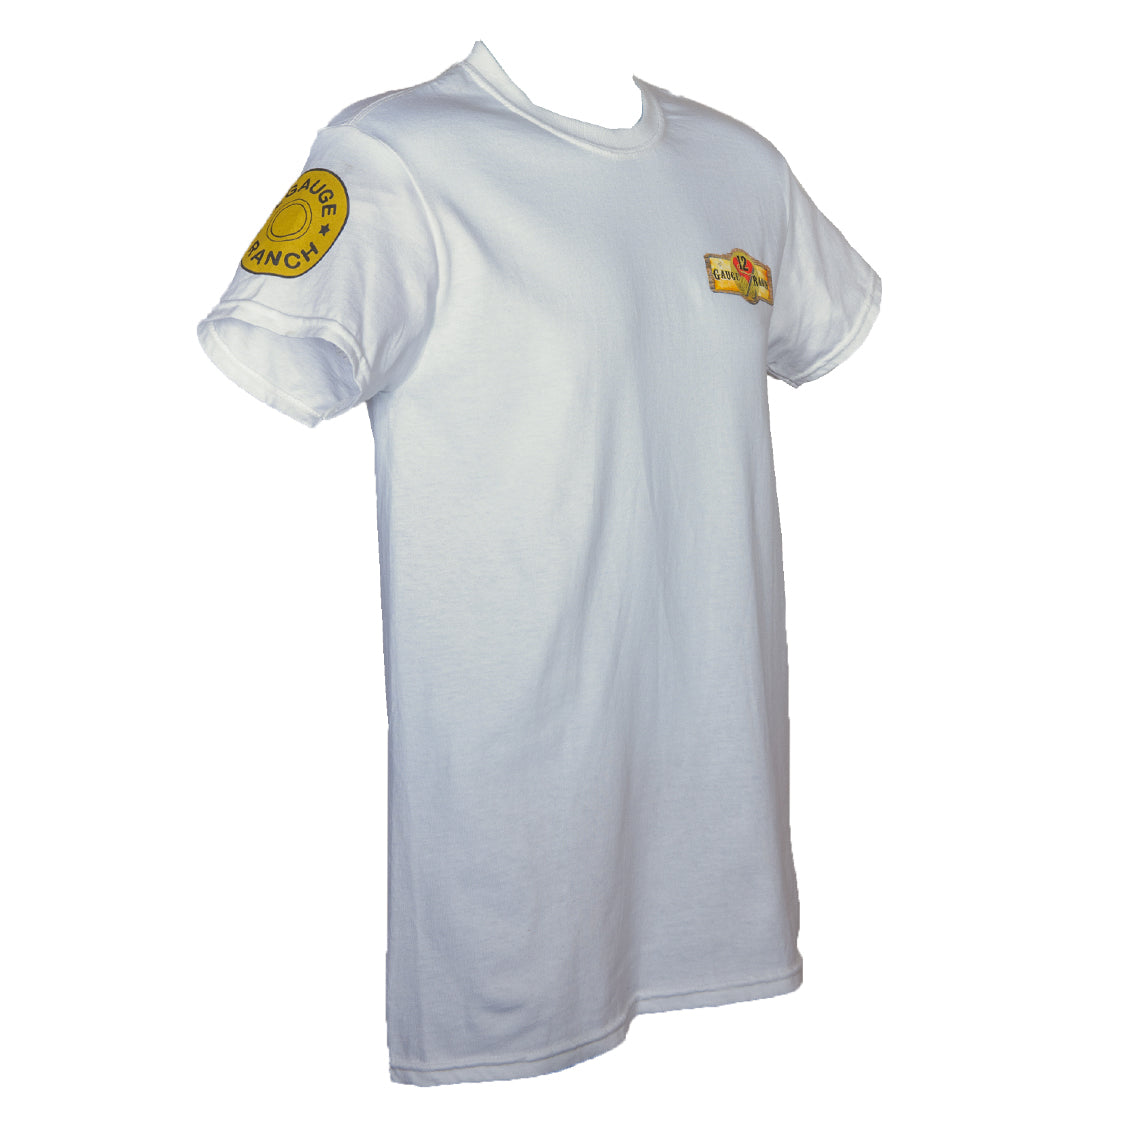 12 Gauge Ranch White Short Sleeve Shirt (SSGWT101) – 12 Gauge Ranch Ranch